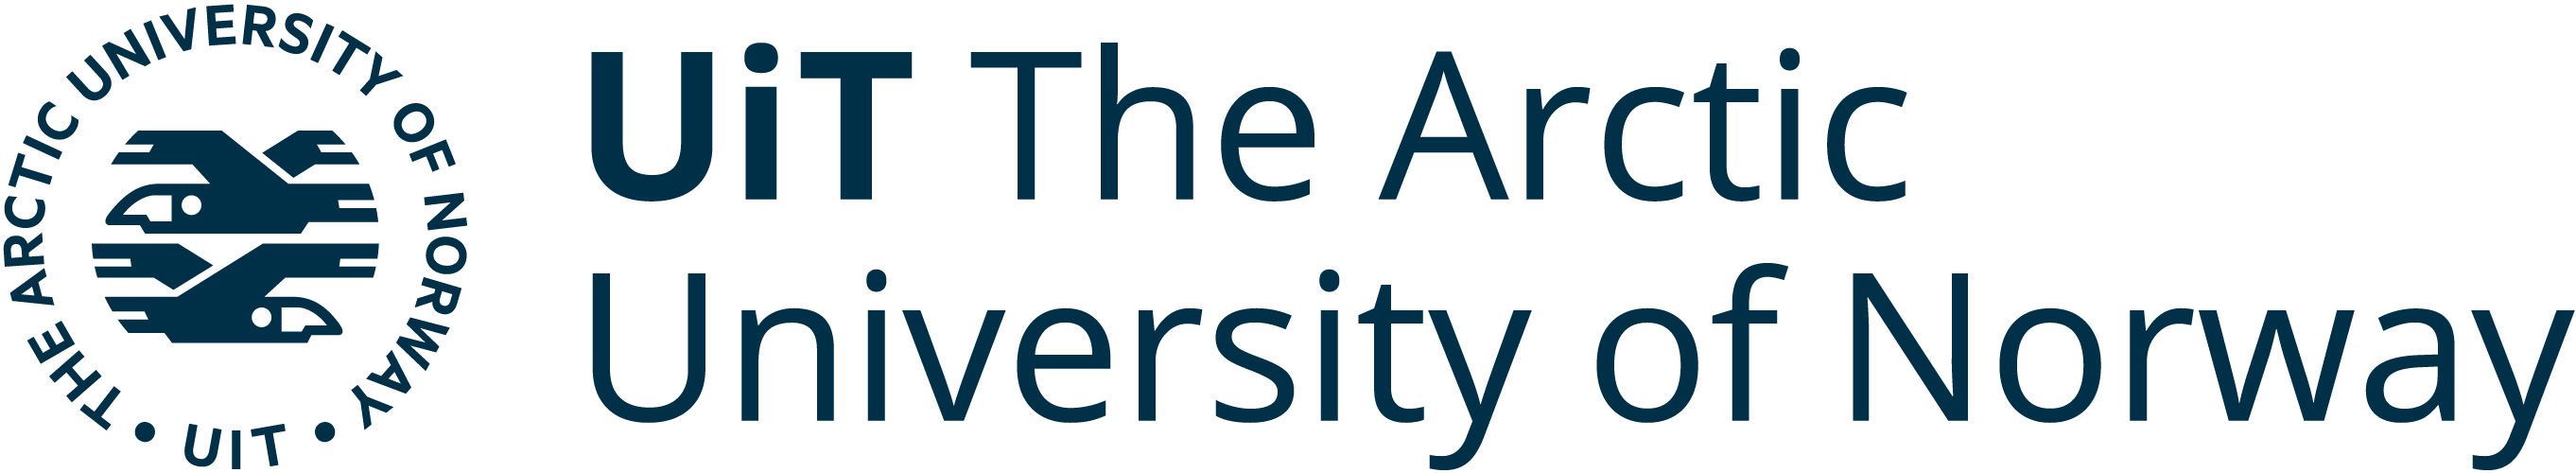 UIT Arctic University of Norway logo